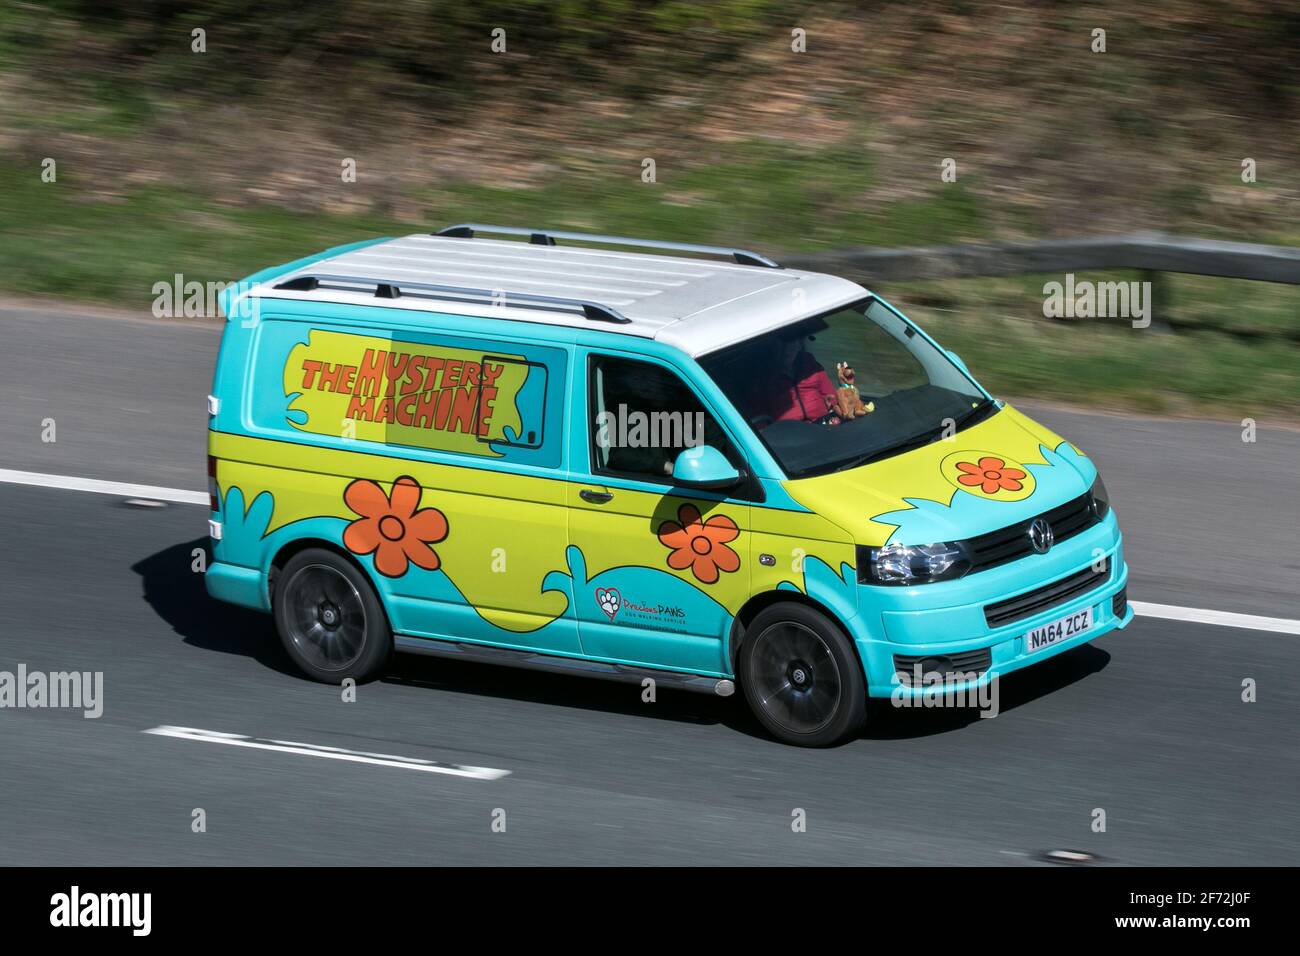 2014 VW transporter T28 StartLine TDI caravelle.Le service de marche pour chiens Mystery machine Scooby Doo Volkswagen sur l'autoroute M6 au Royaume-Uni Banque D'Images